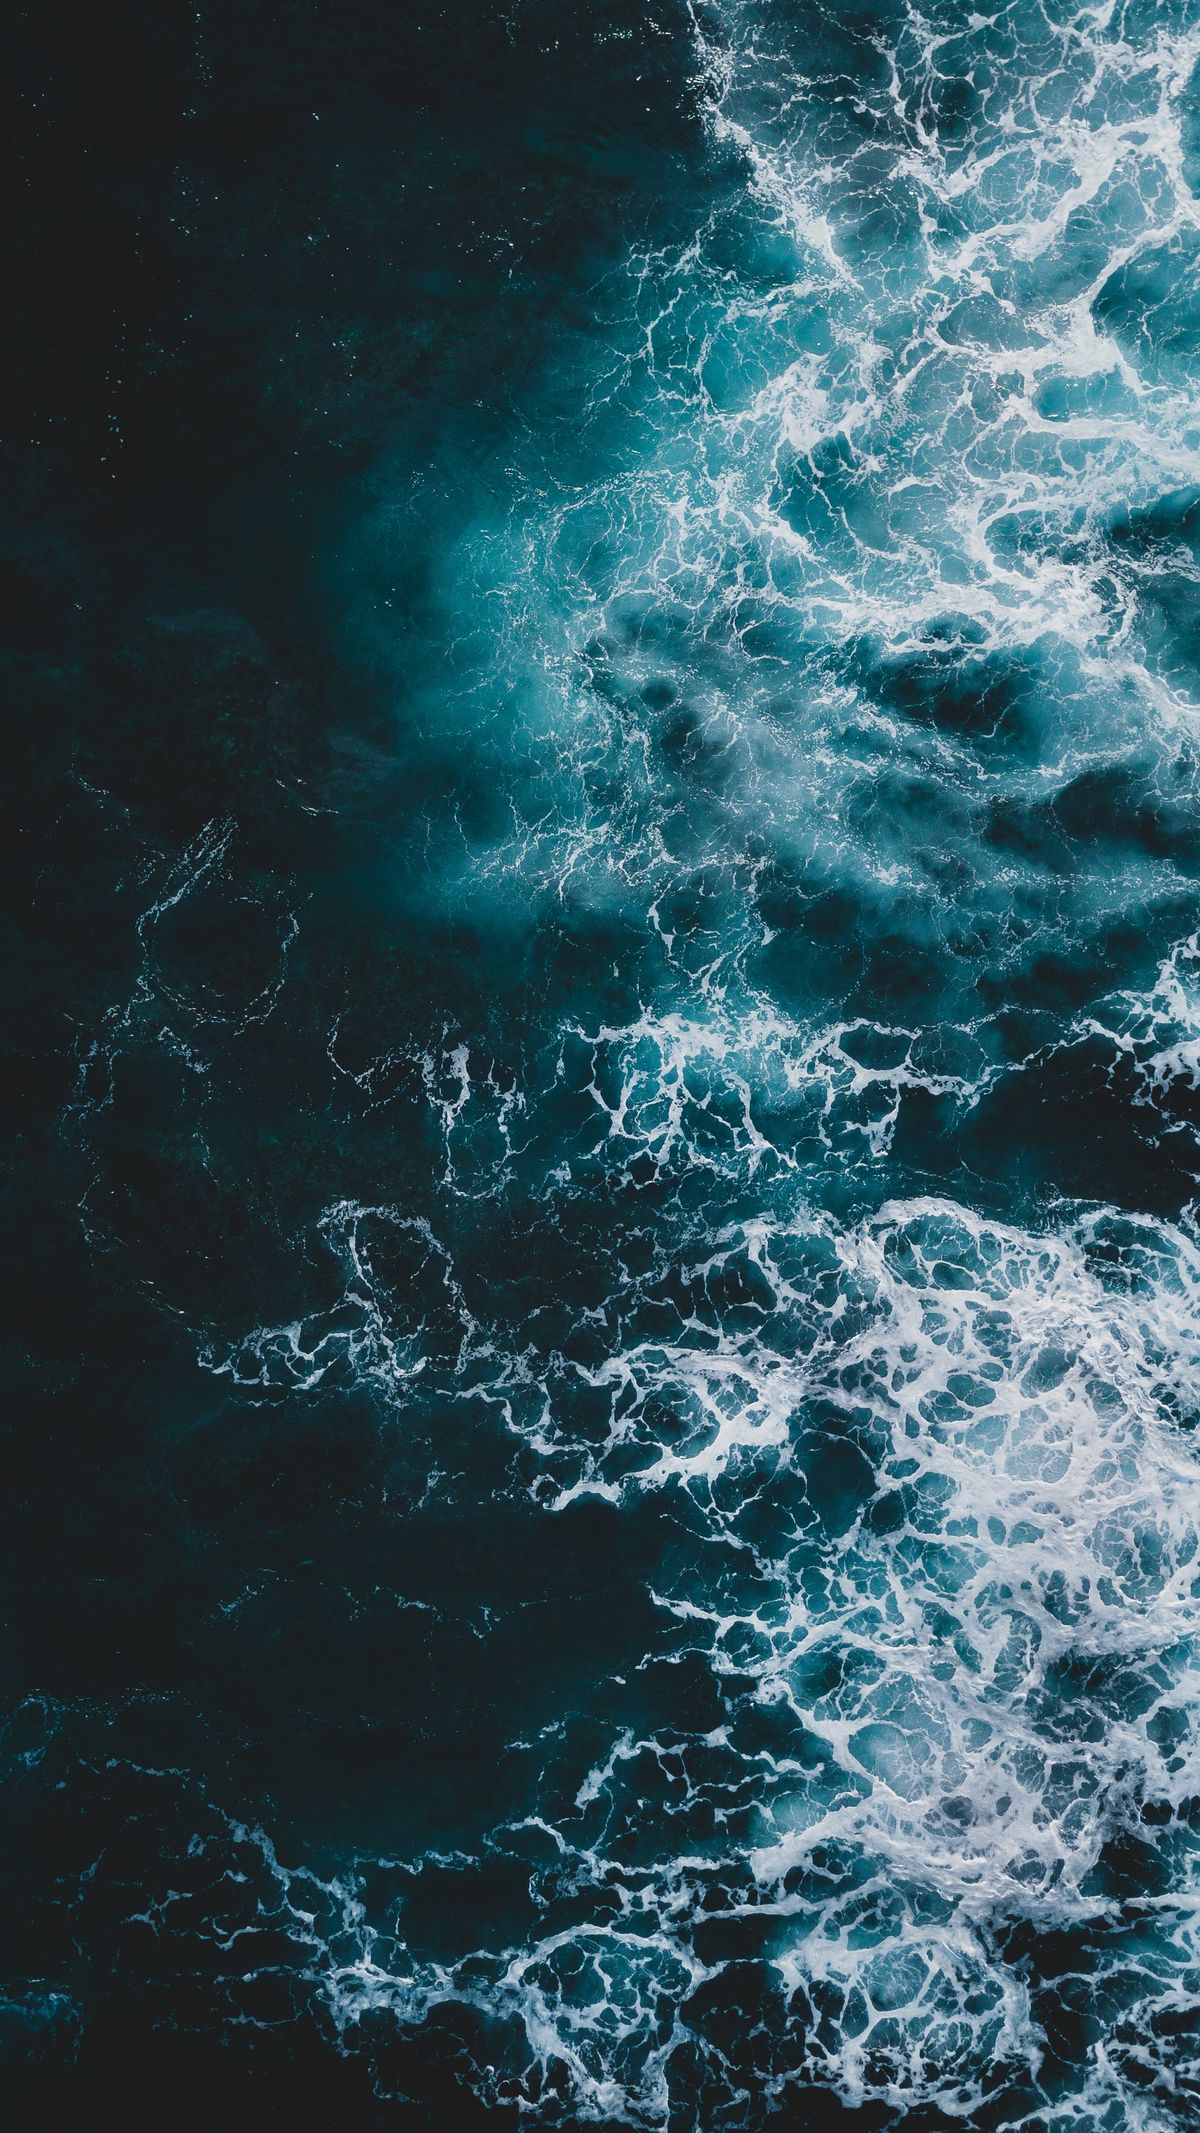 Hình nền điện thoại sóng biển - Hãy cùng lựa chọn hình nền điện thoại sóng biển thật đẹp để tận hưởng cảm giác mát mẻ của biển cả. Hình nền này sẽ giúp bạn thư giãn khi nhìn vào được cái đẹp tuyệt vời của biển và mang đến cho bạn sự giải trí thú vị.